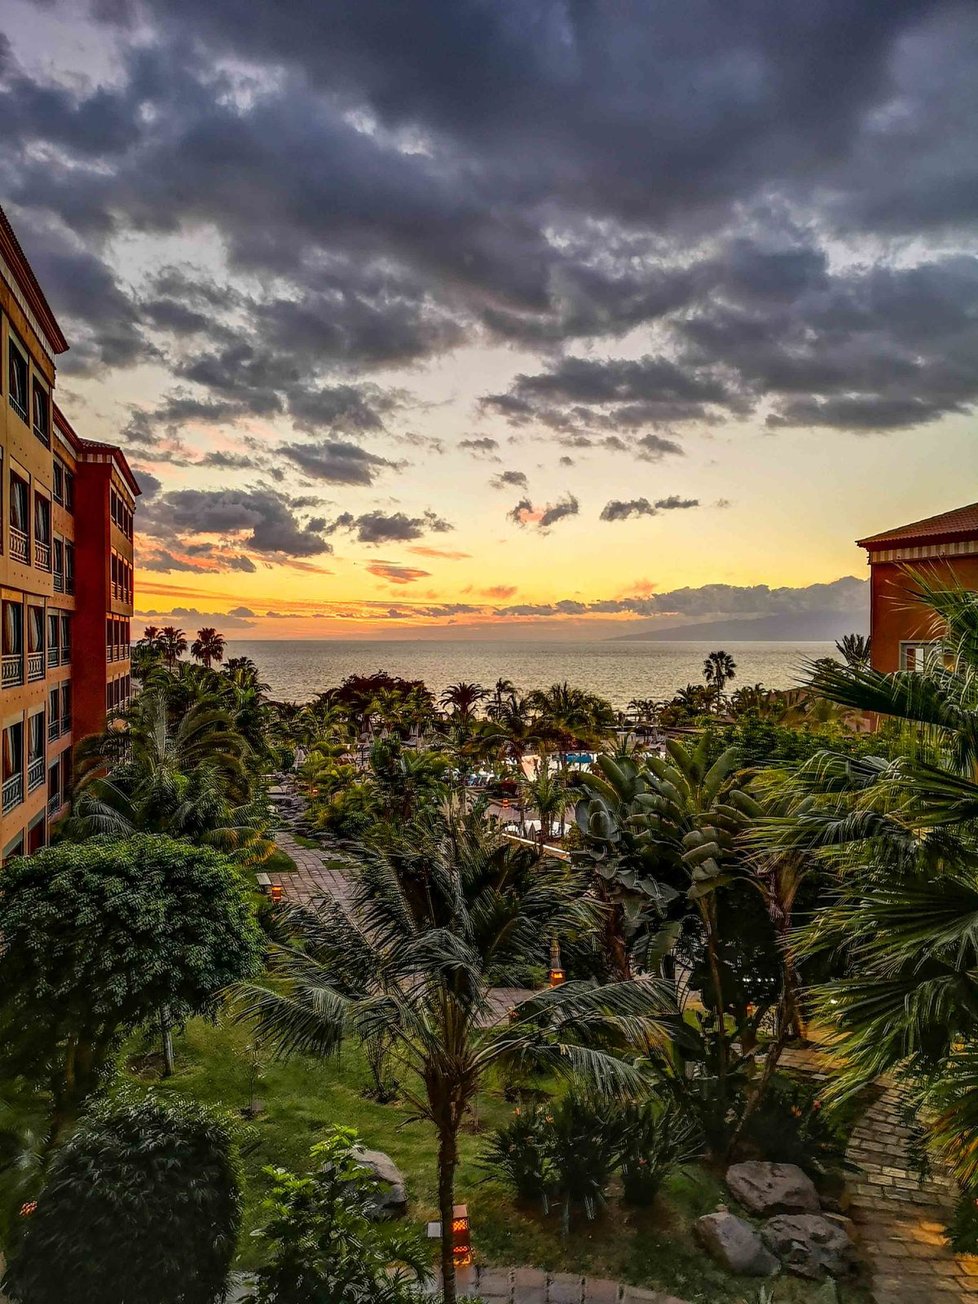 Tisícovka turistů se ocitla v karanténě ve čtyřhvězdičkovém hotelu H10 Costa Adeje Palace na Tenerife.